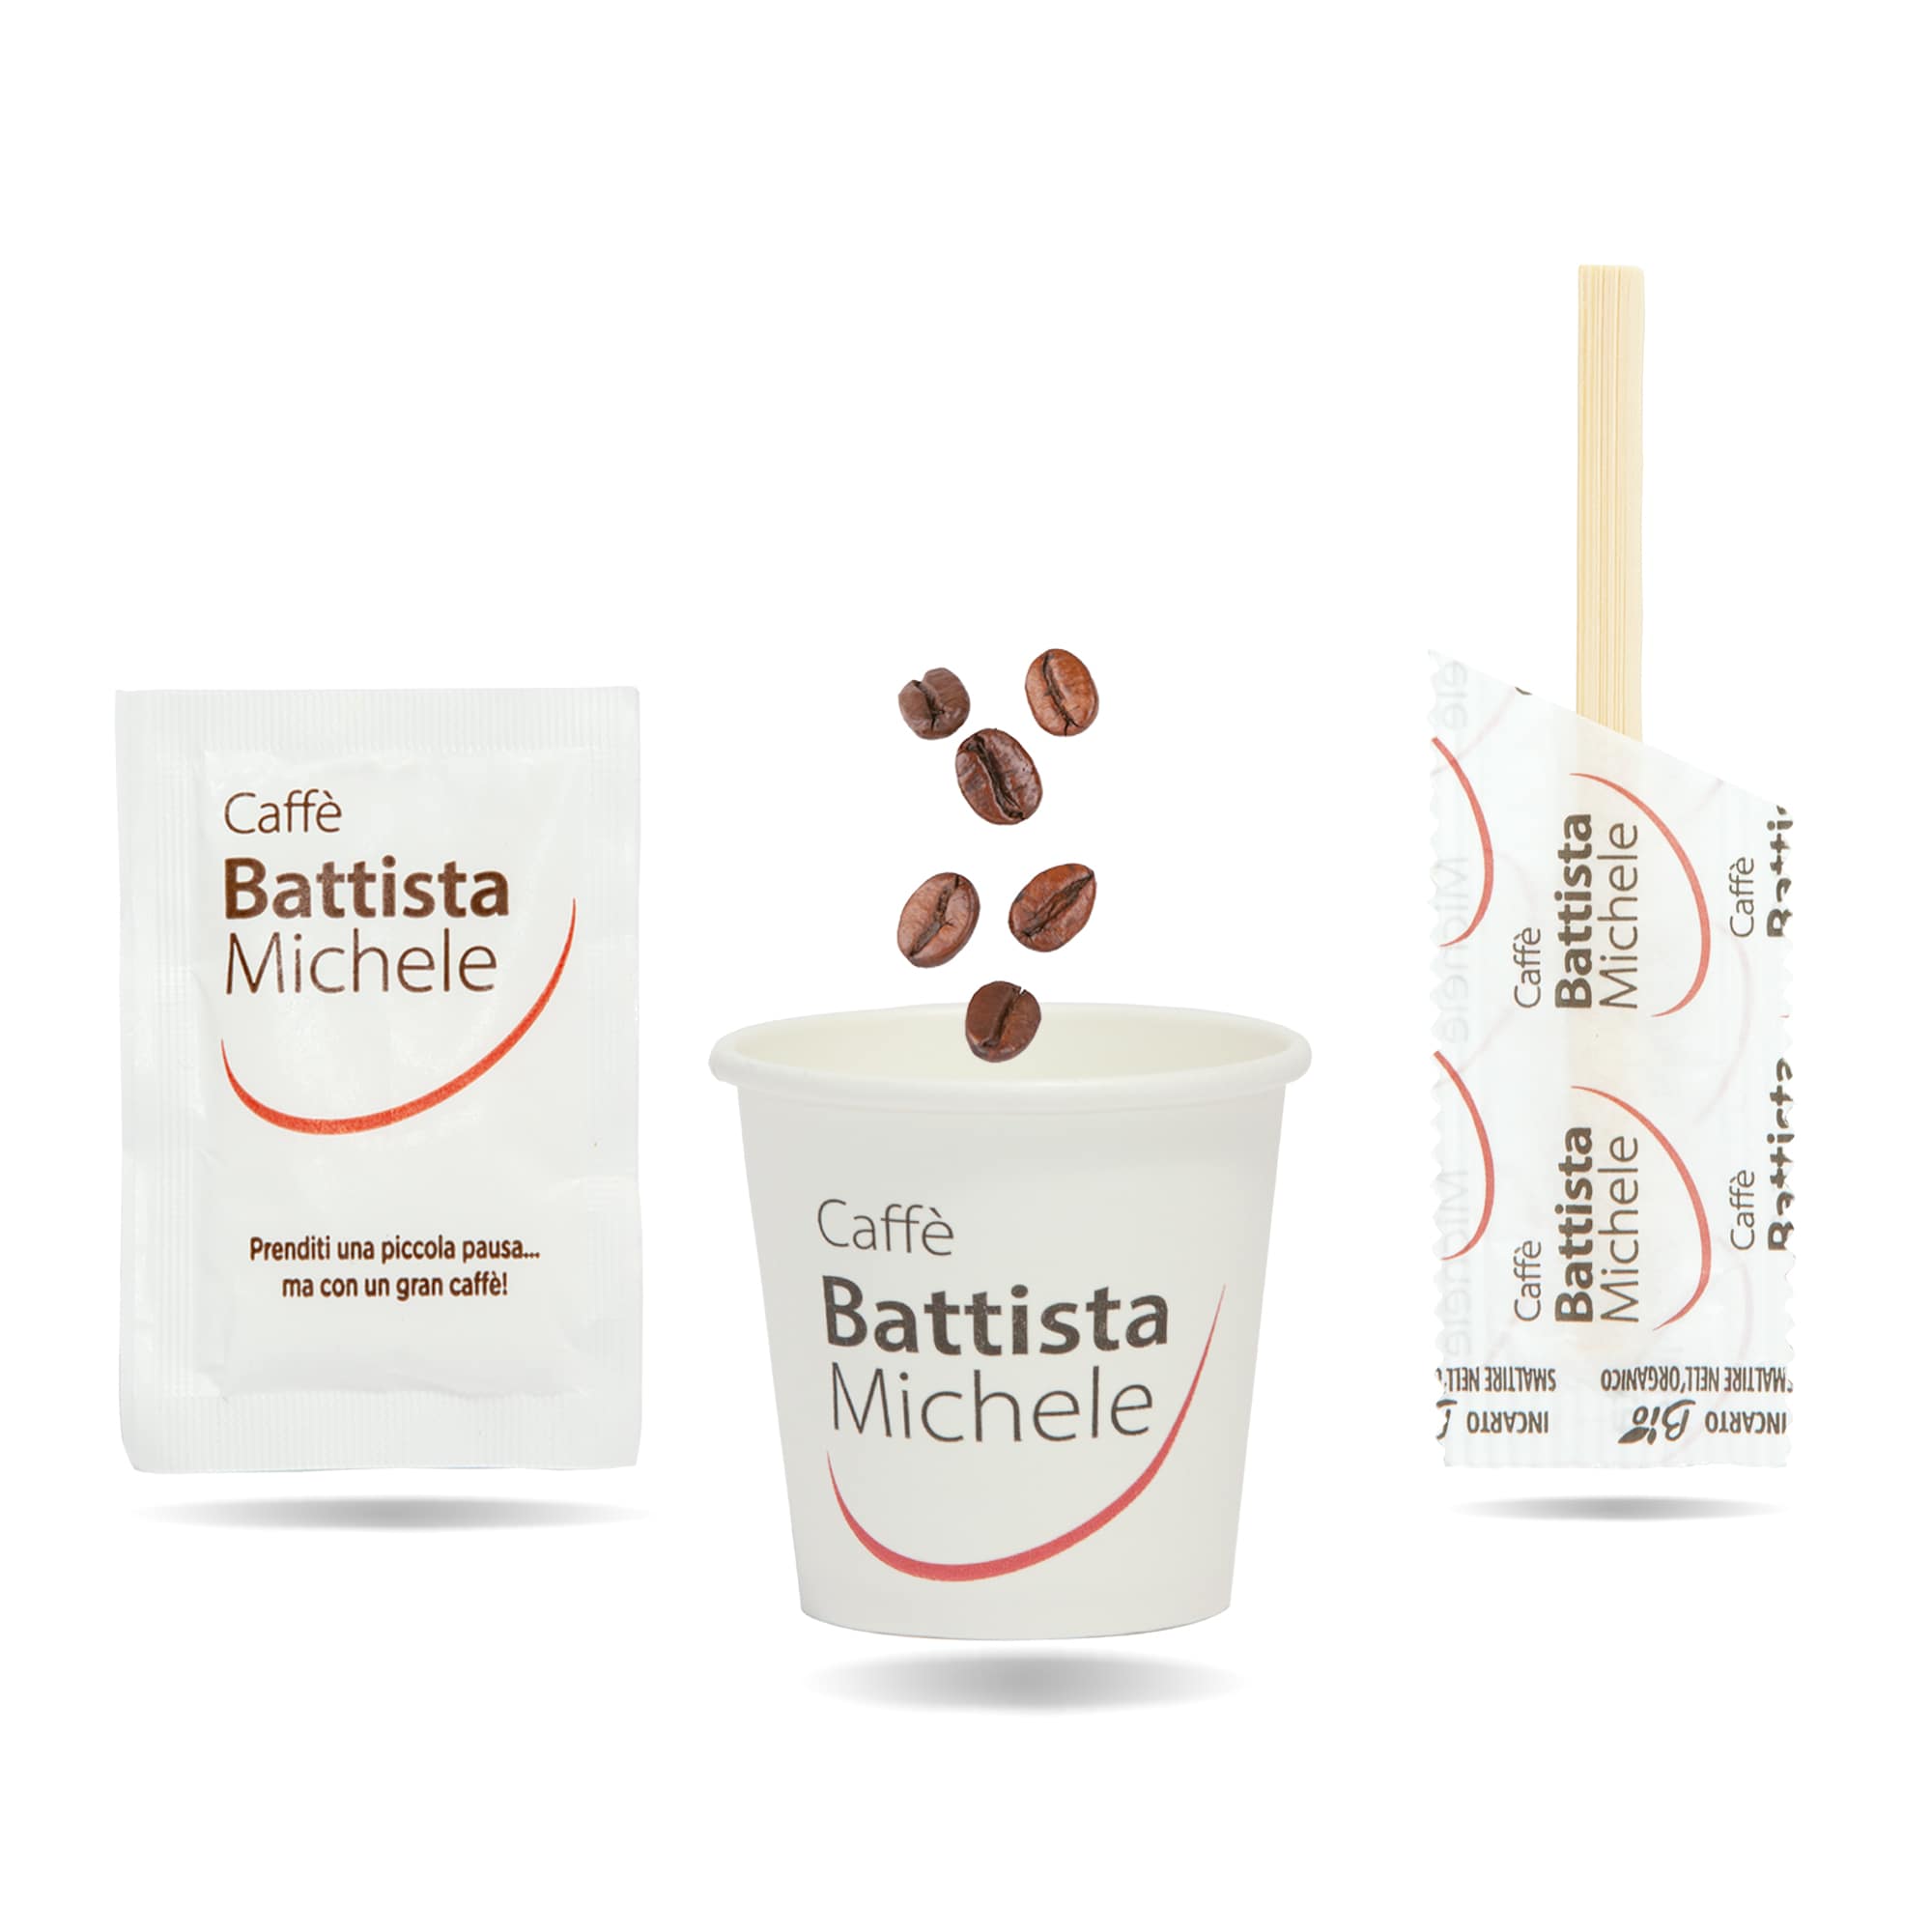 KIT ACCESSORI CAFFÉ  Battistashop - Il vero caffè Battista